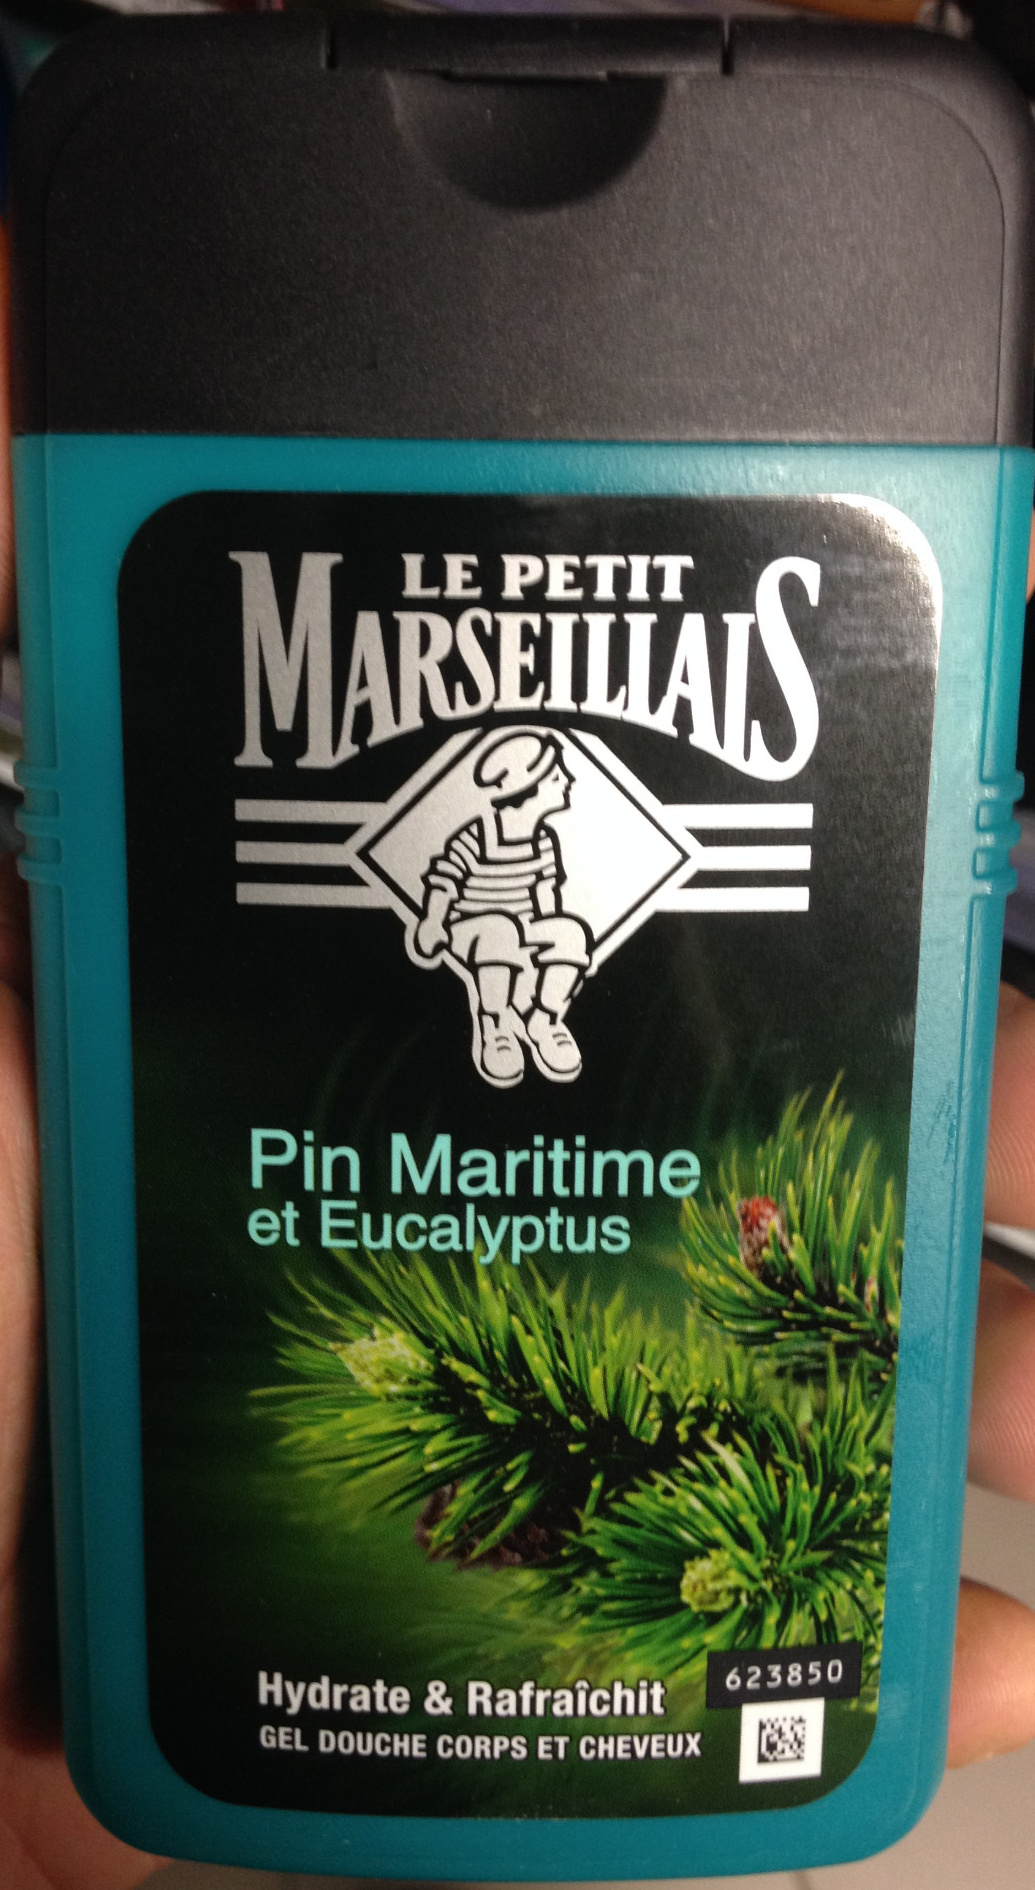 Pin maritime et Eucalyptus - Product - fr